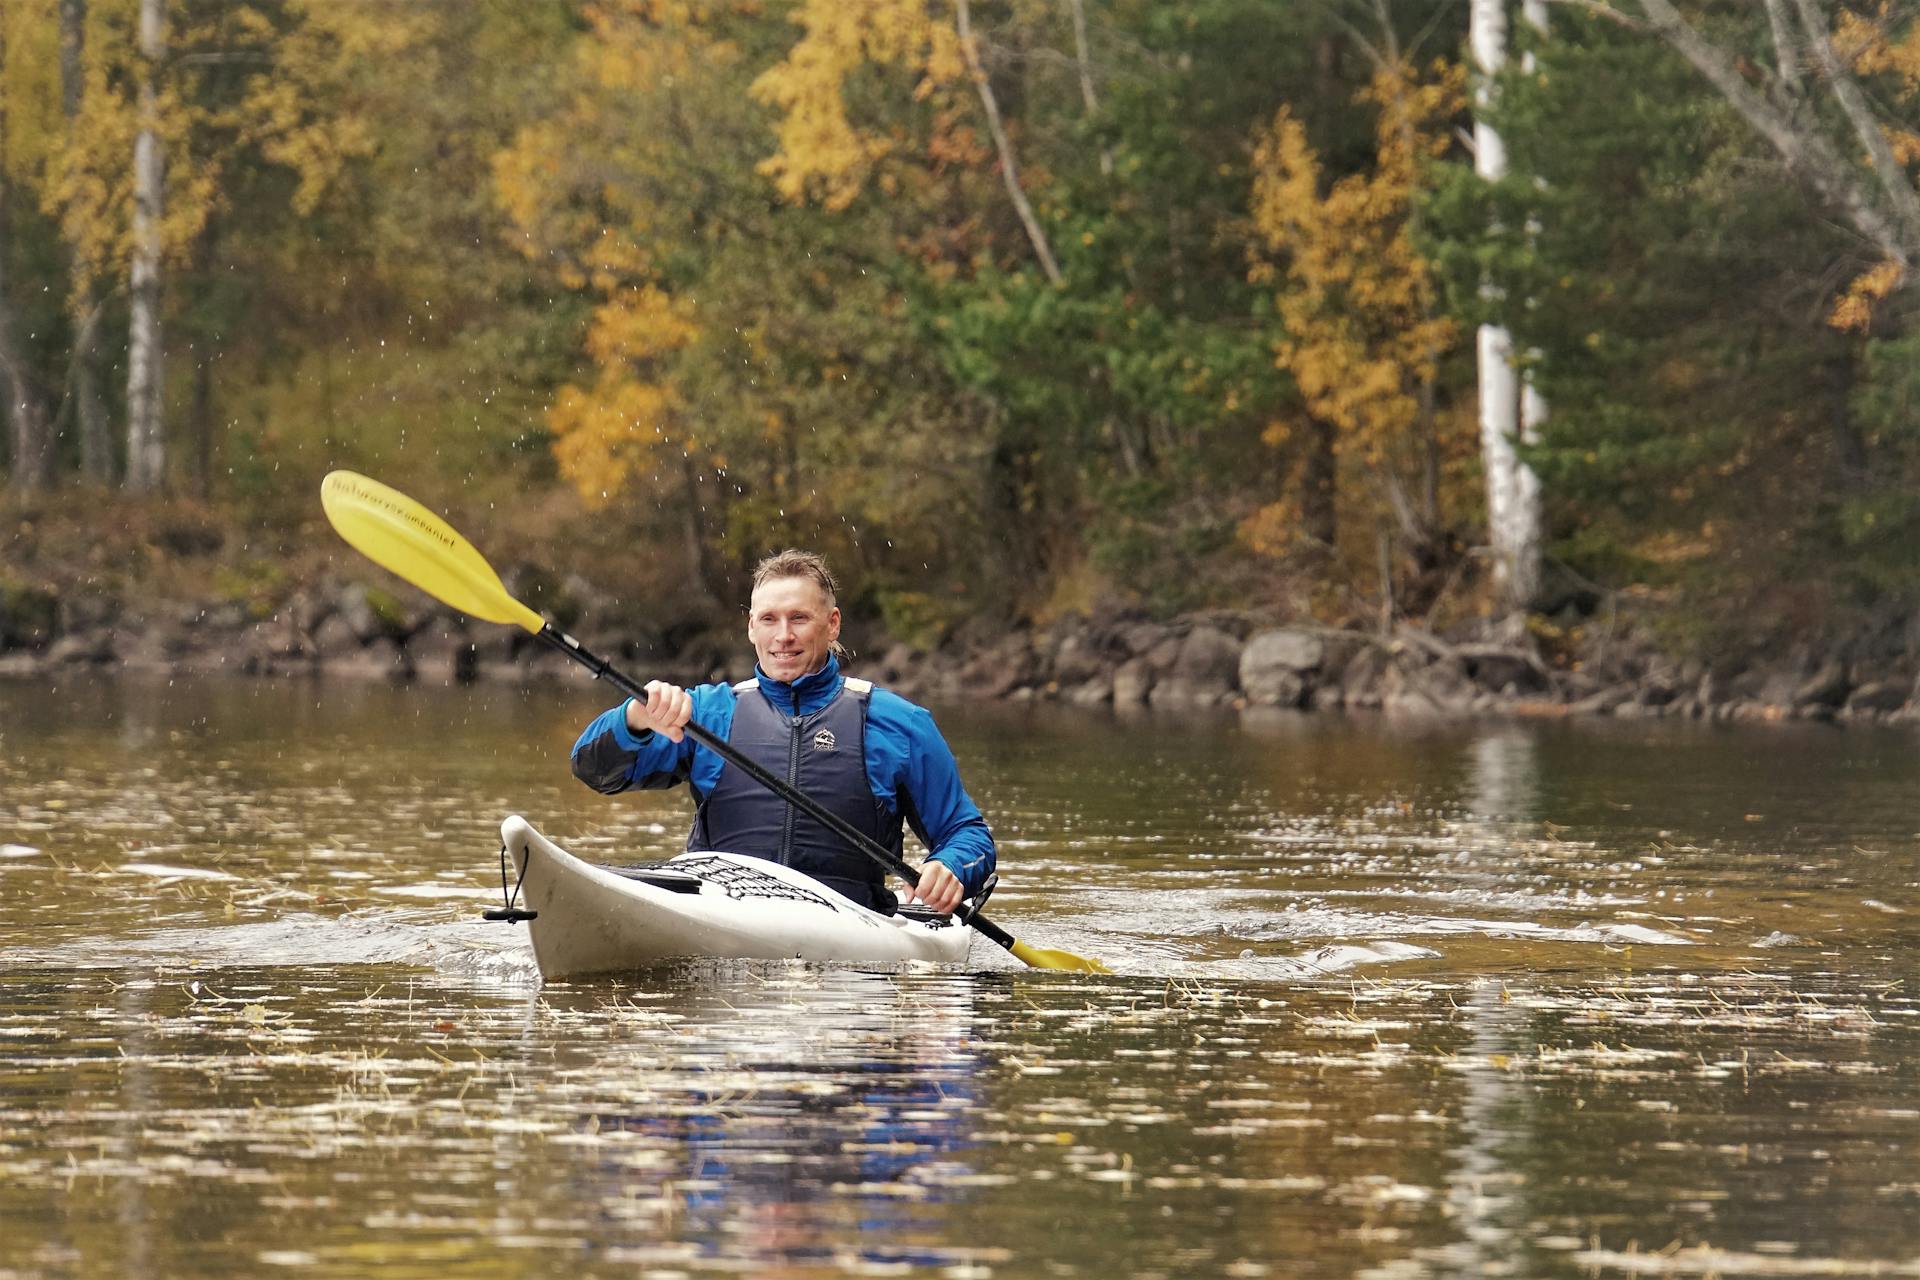 Un hombre está practicando kayak, enviando gotas de agua volando desde el remo, en la reserva natural de Malingsbo-Kloten en Suecia.